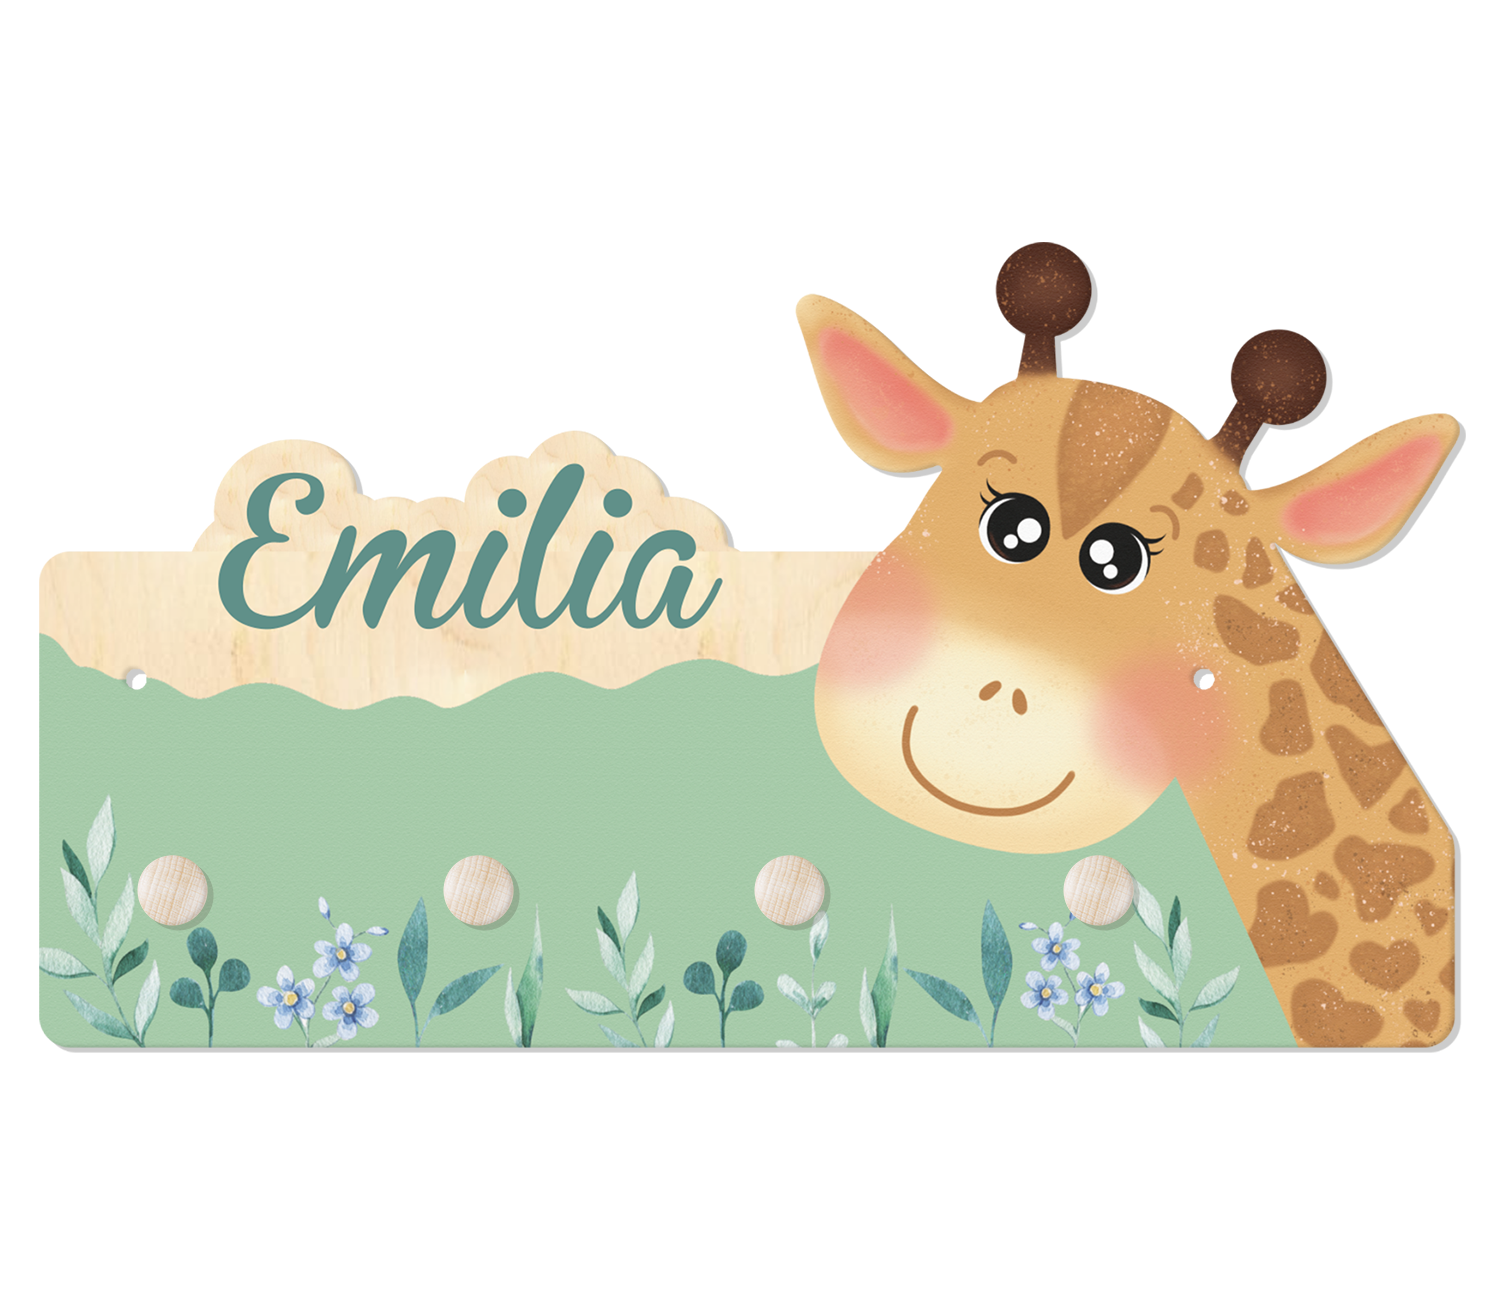 Der Name ist personalisiert, eine lächelende Giraffe und Blumen auf einer Wiese zieren diese Garderobe.